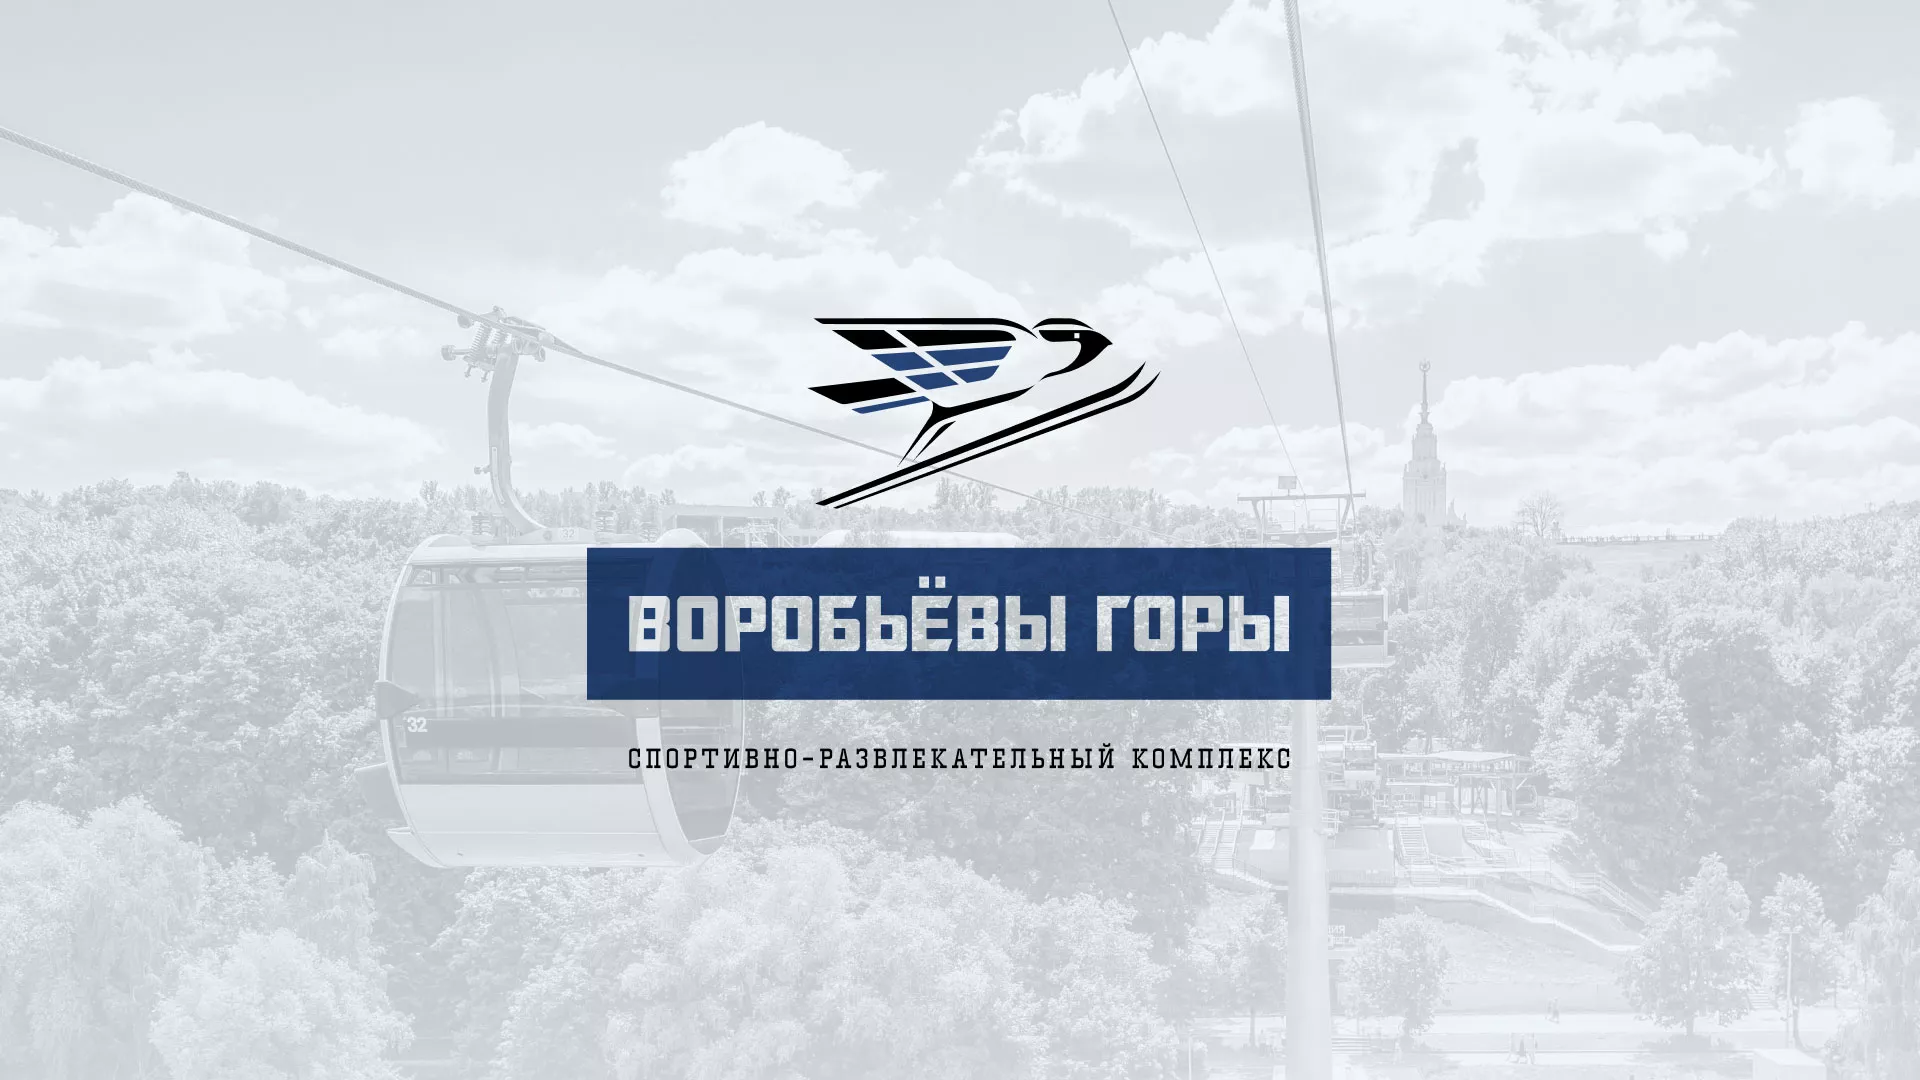 Разработка сайта в Петрозаводске для спортивно-развлекательного комплекса «Воробьёвы горы»